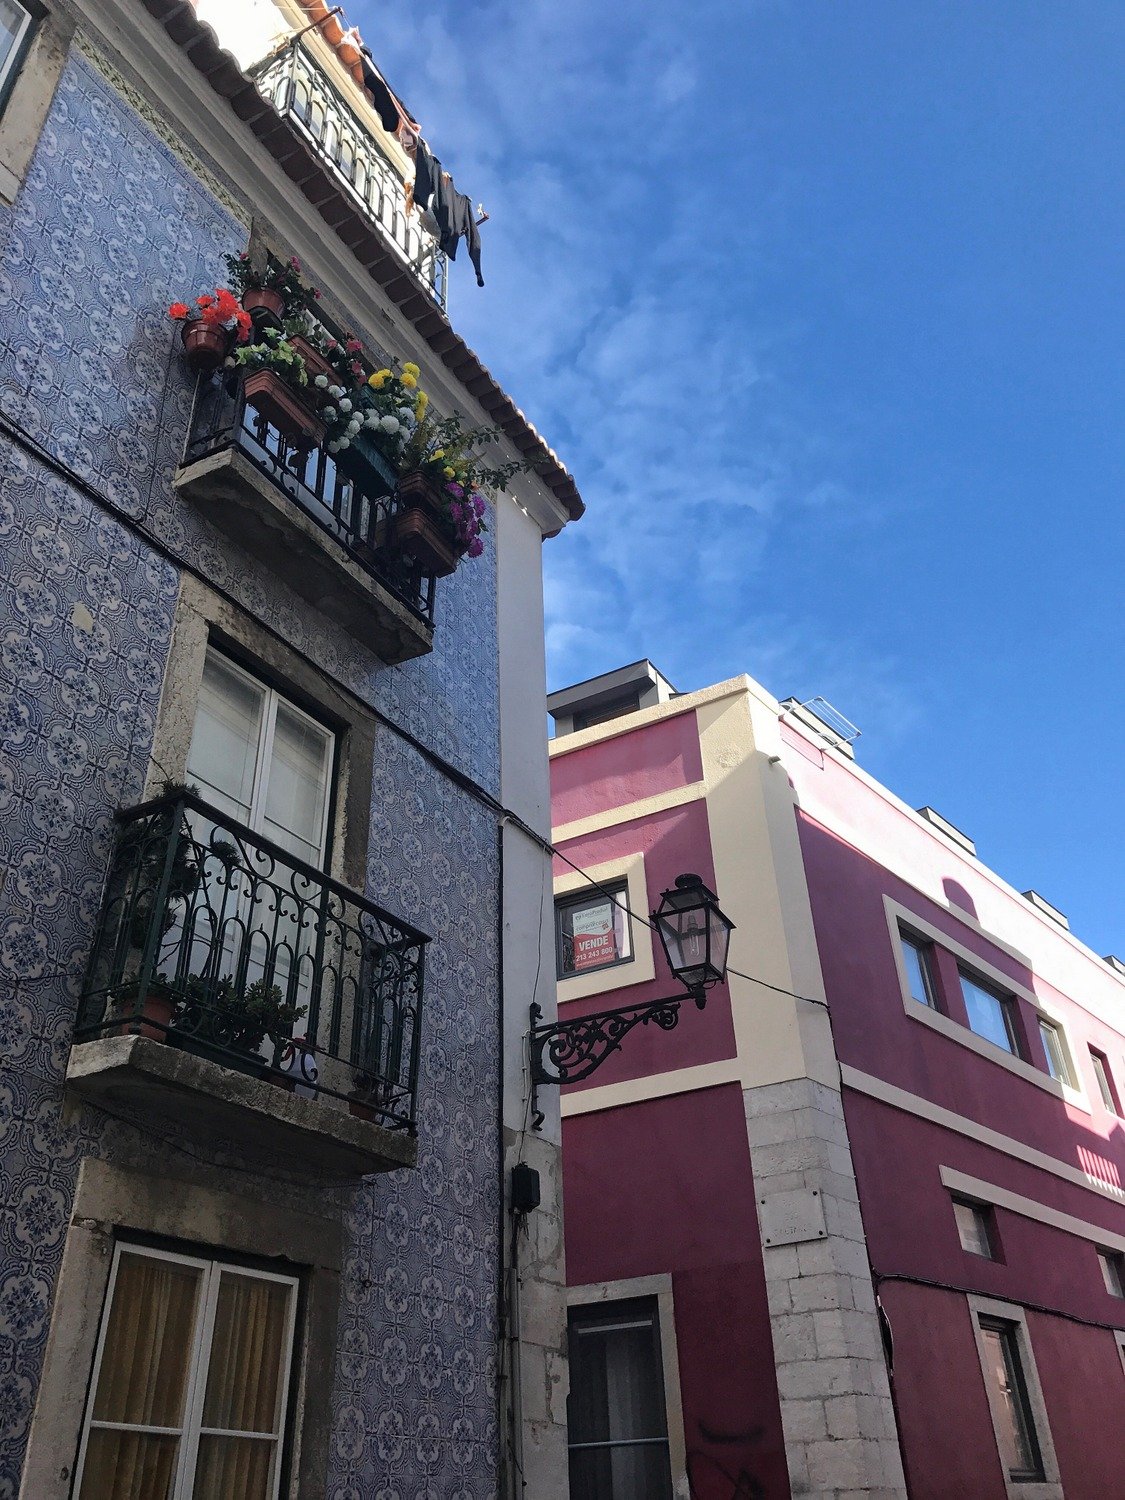 Lisbon buildings by Samio